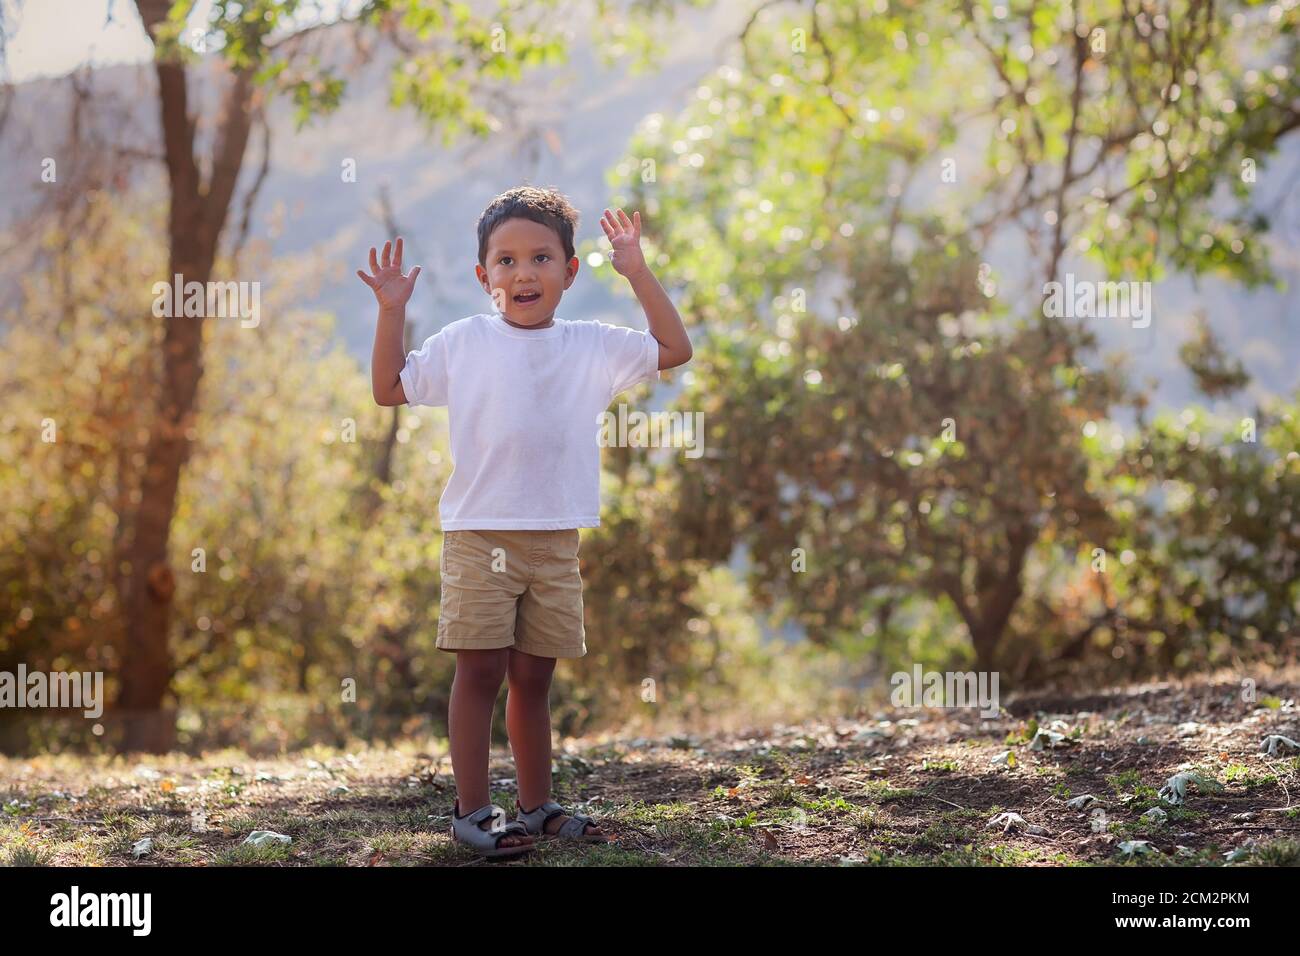 Niño joven que avanza a la edad preescolar está aprendiendo al aire libre a coger una pelota con sus brazos en el aire, en el sur de California. Foto de stock